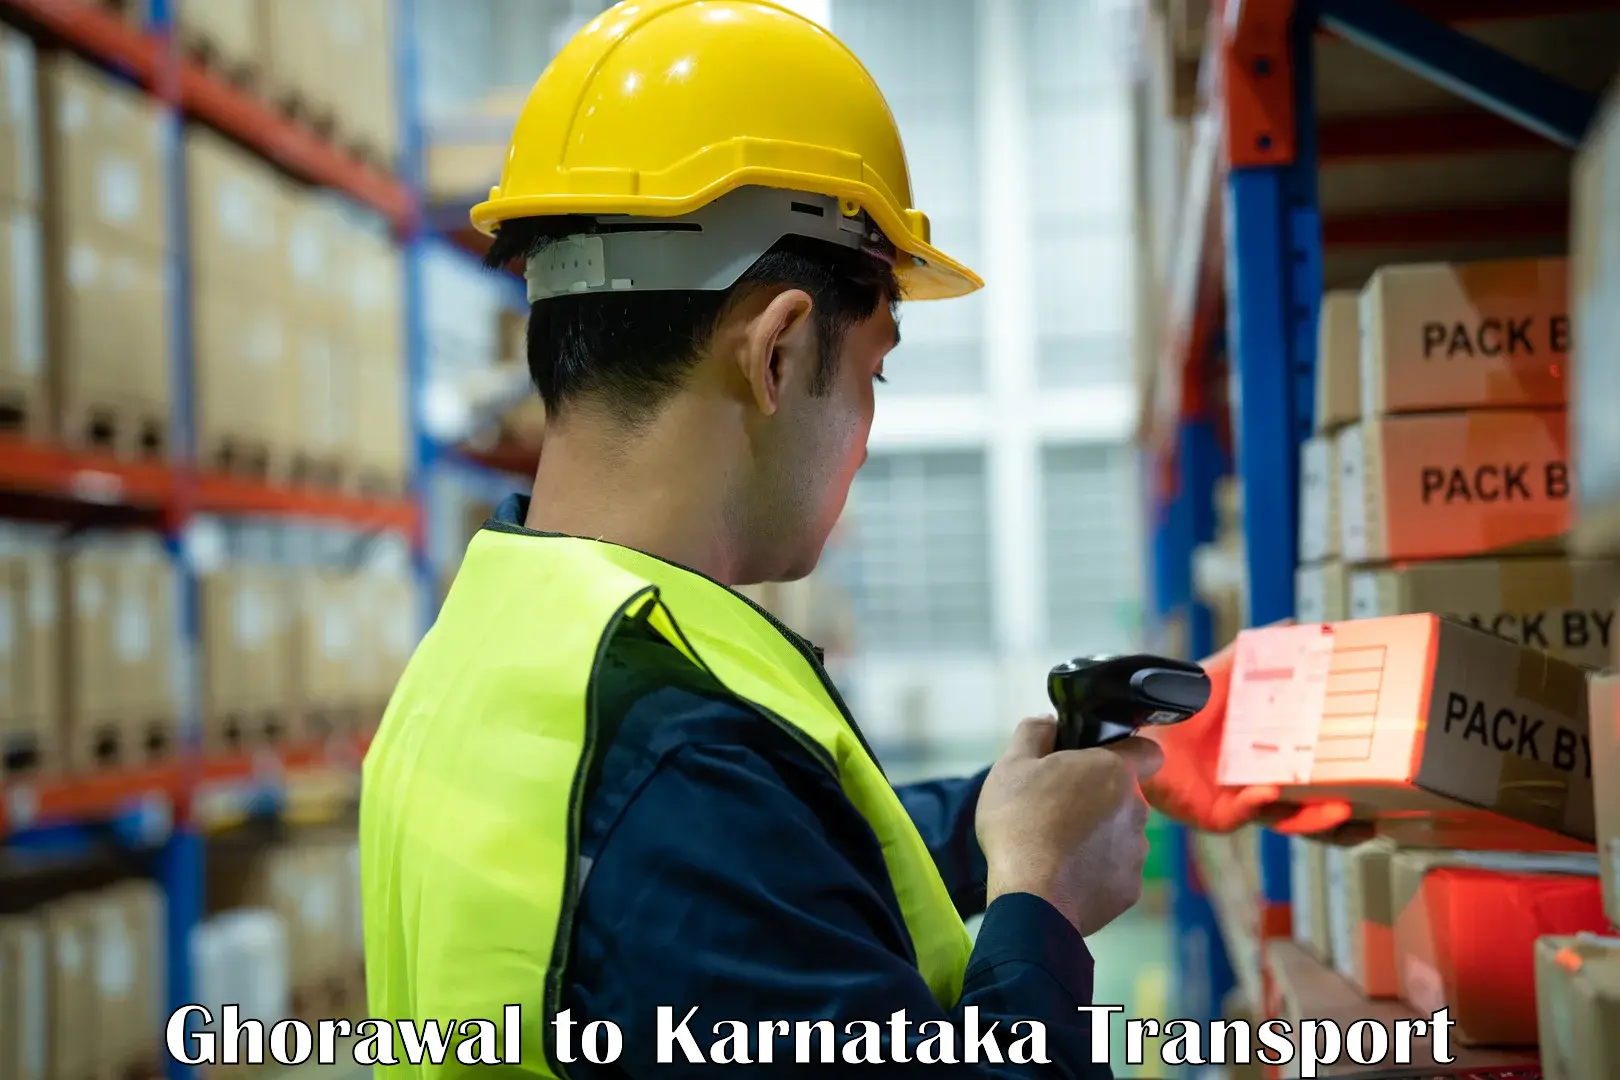 Furniture transport service Ghorawal to Karnataka